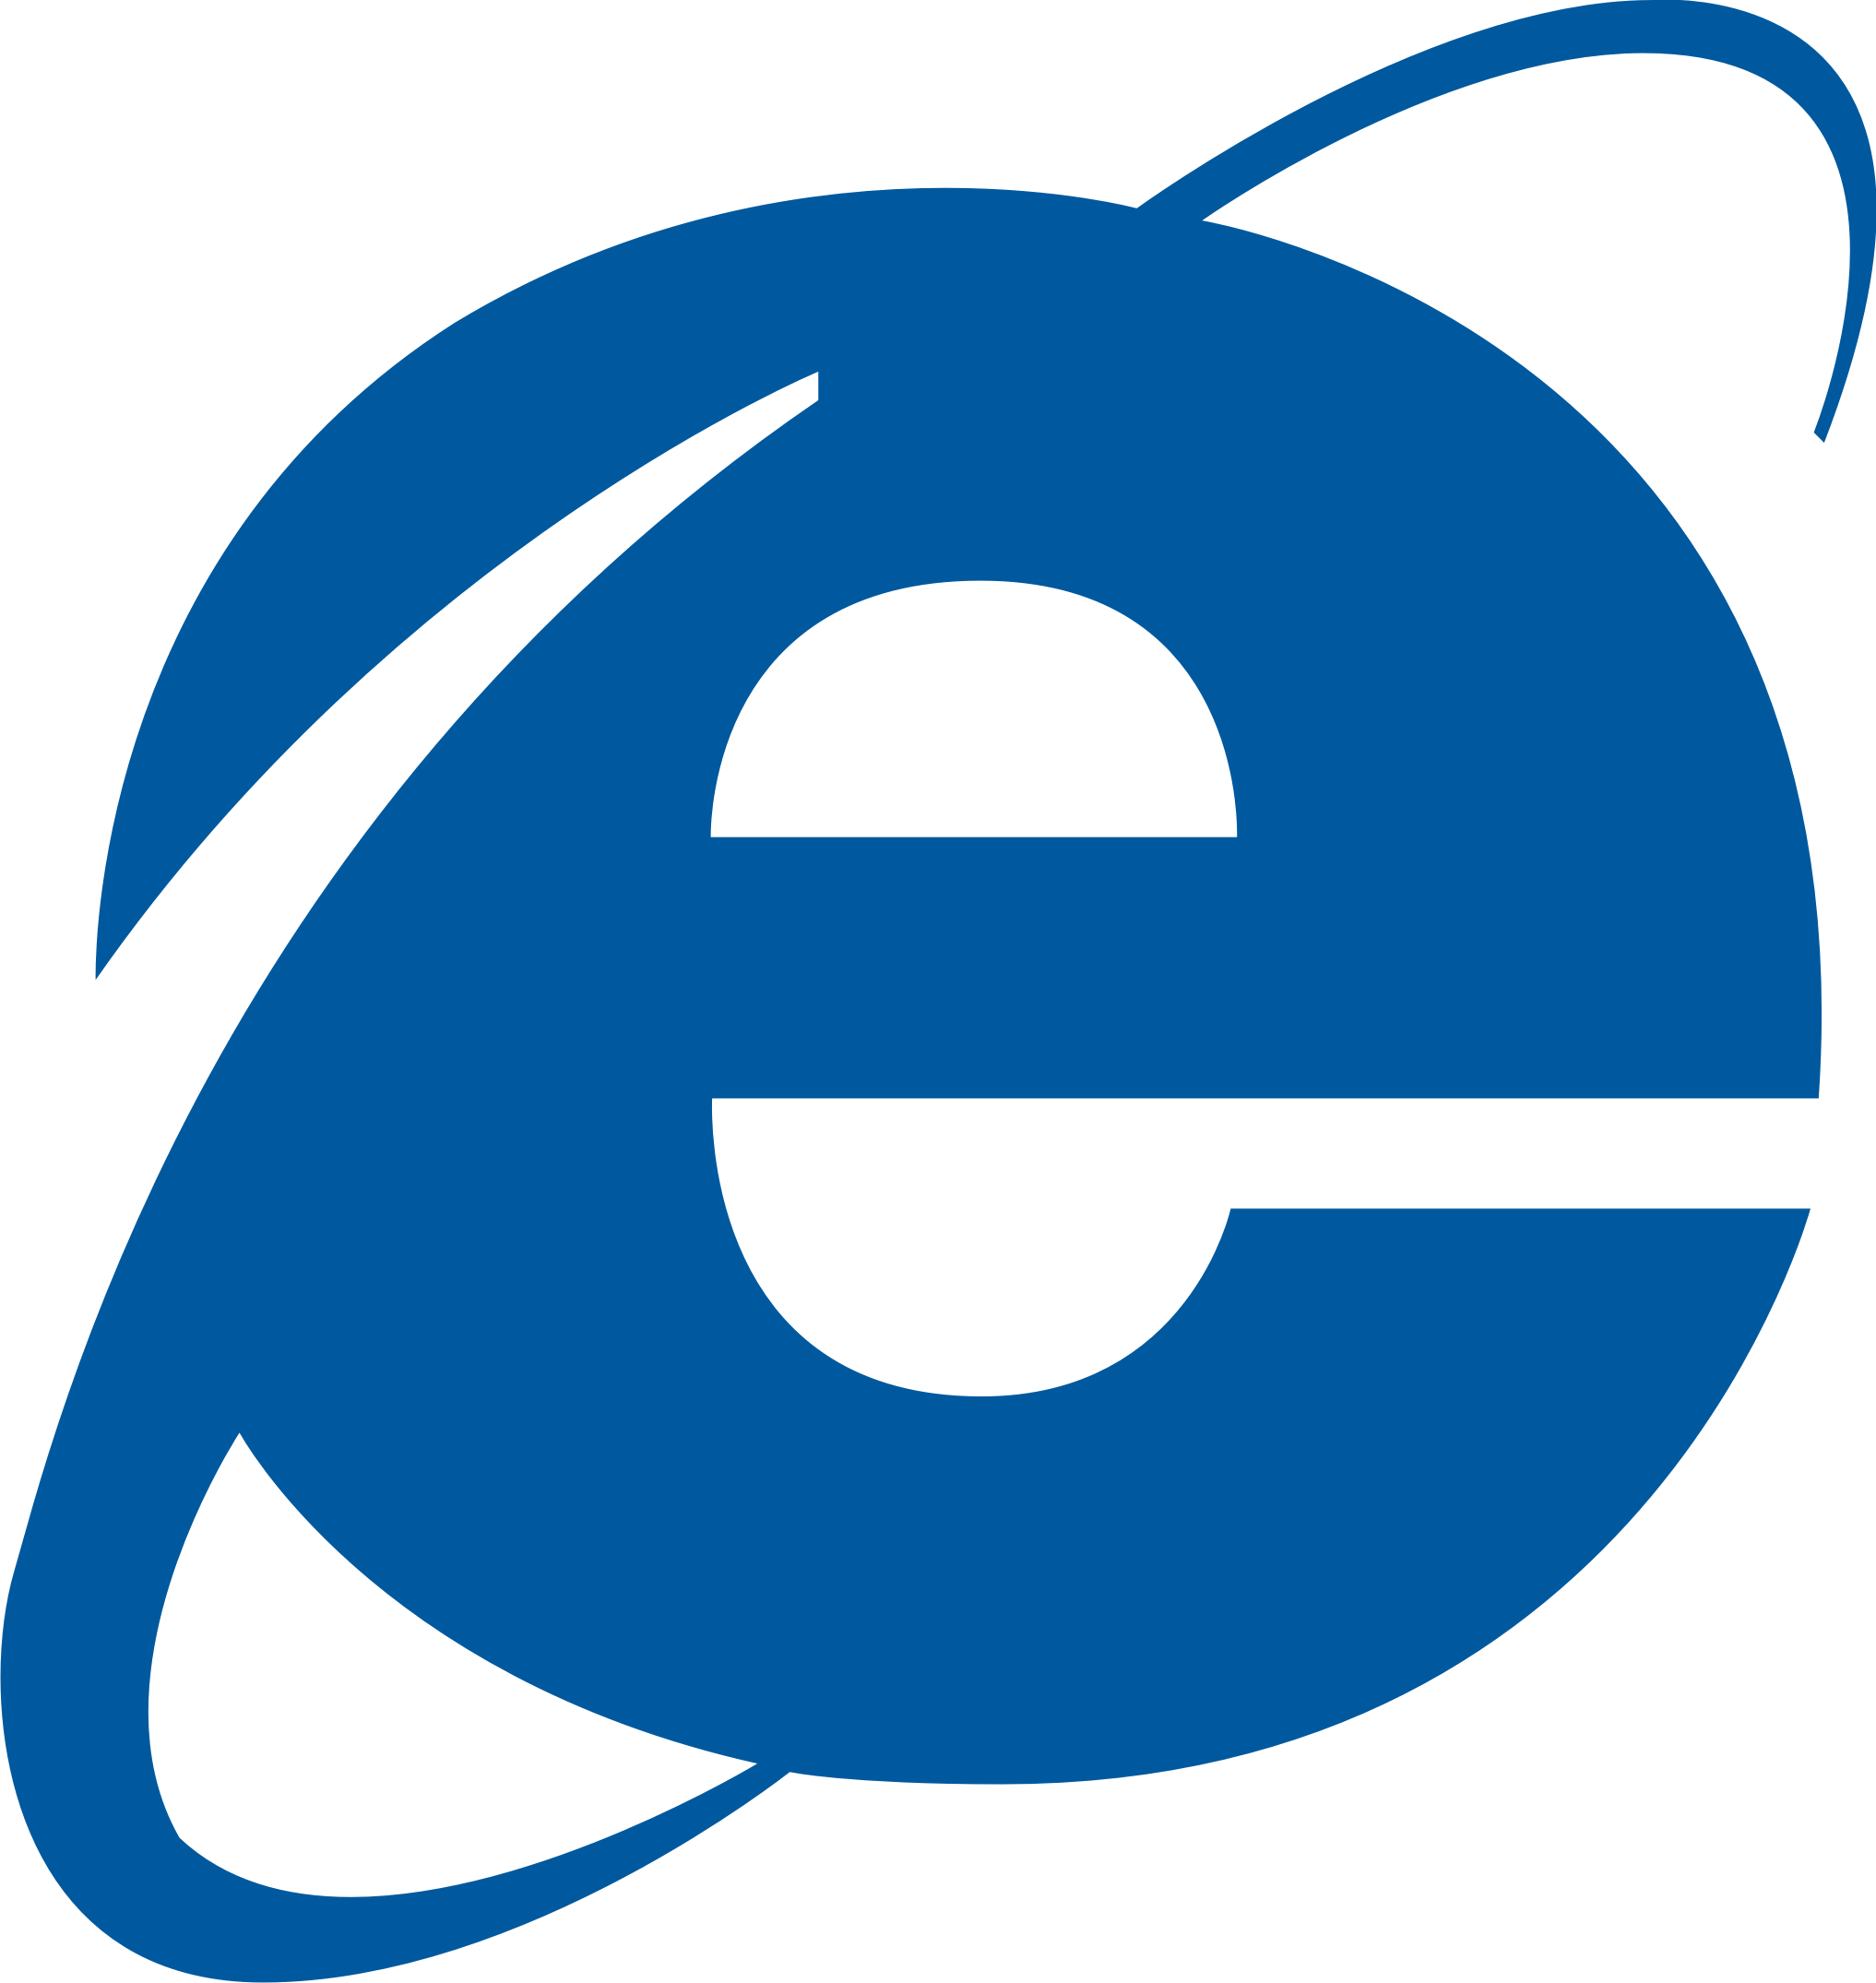 IE7 Logo - Internet Explorer logo PNG images free download